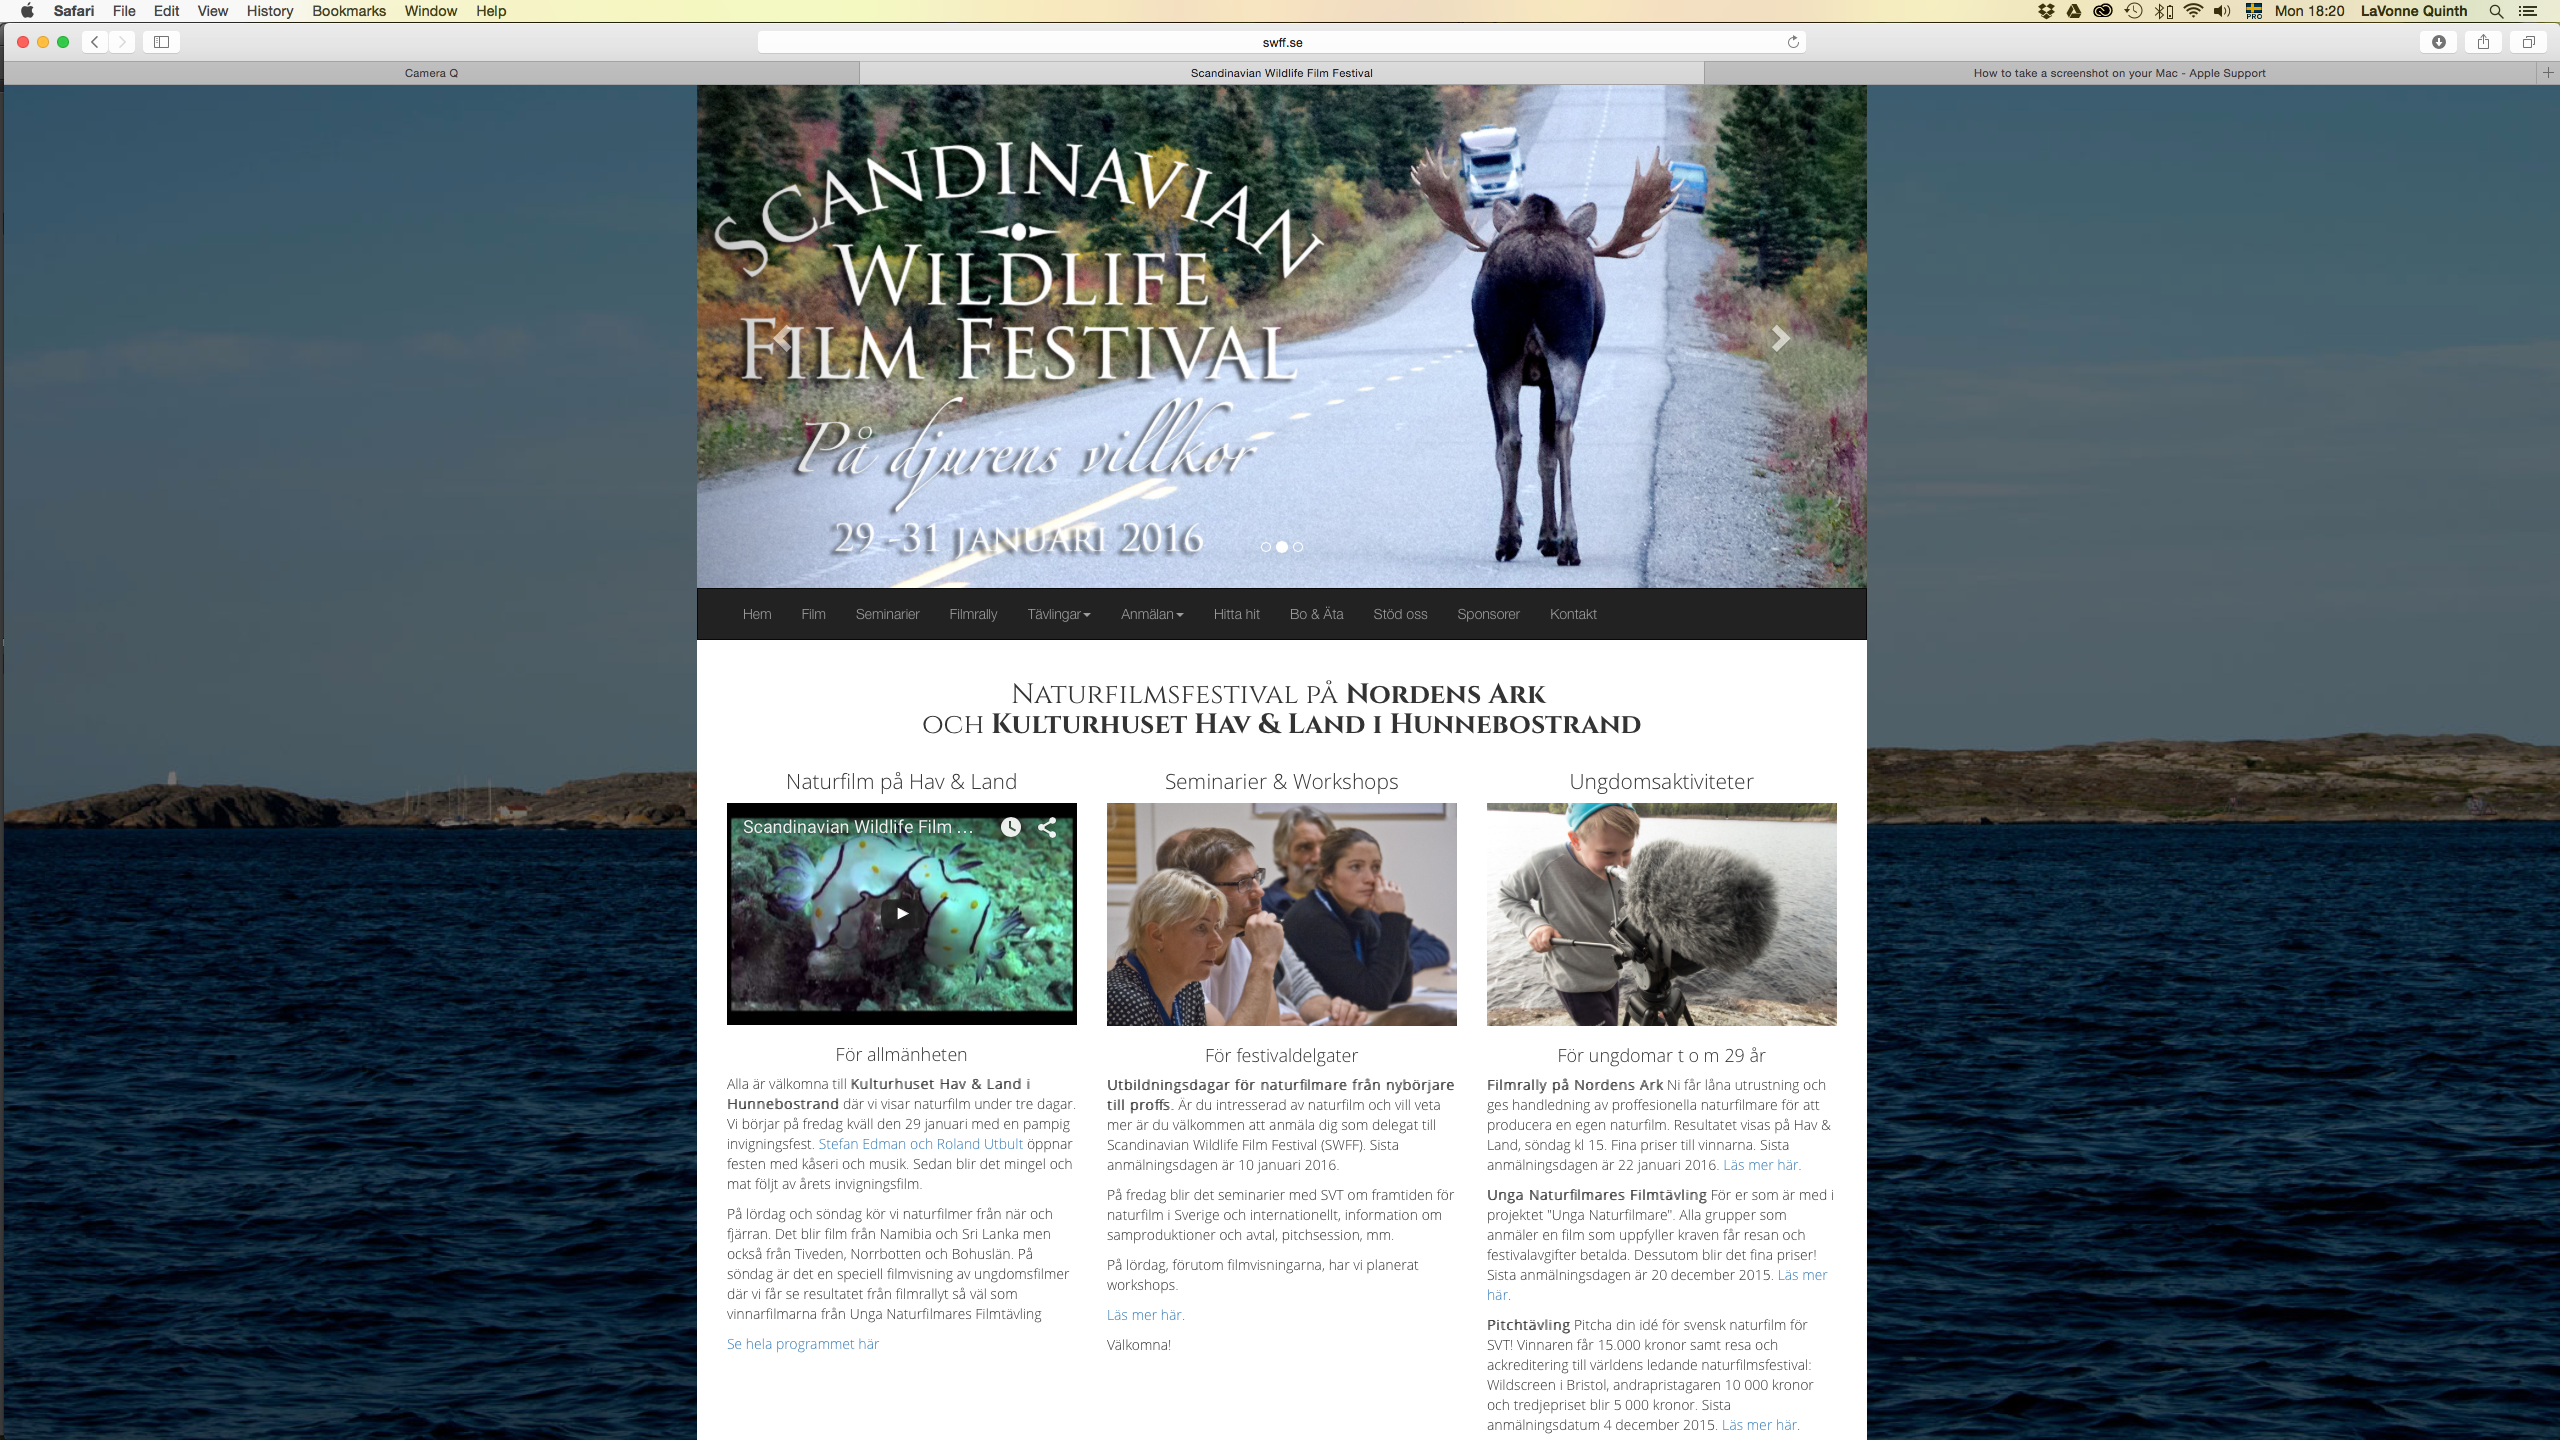 screenshot from www.swff.se - Scandinavian Wildlife Film Festival